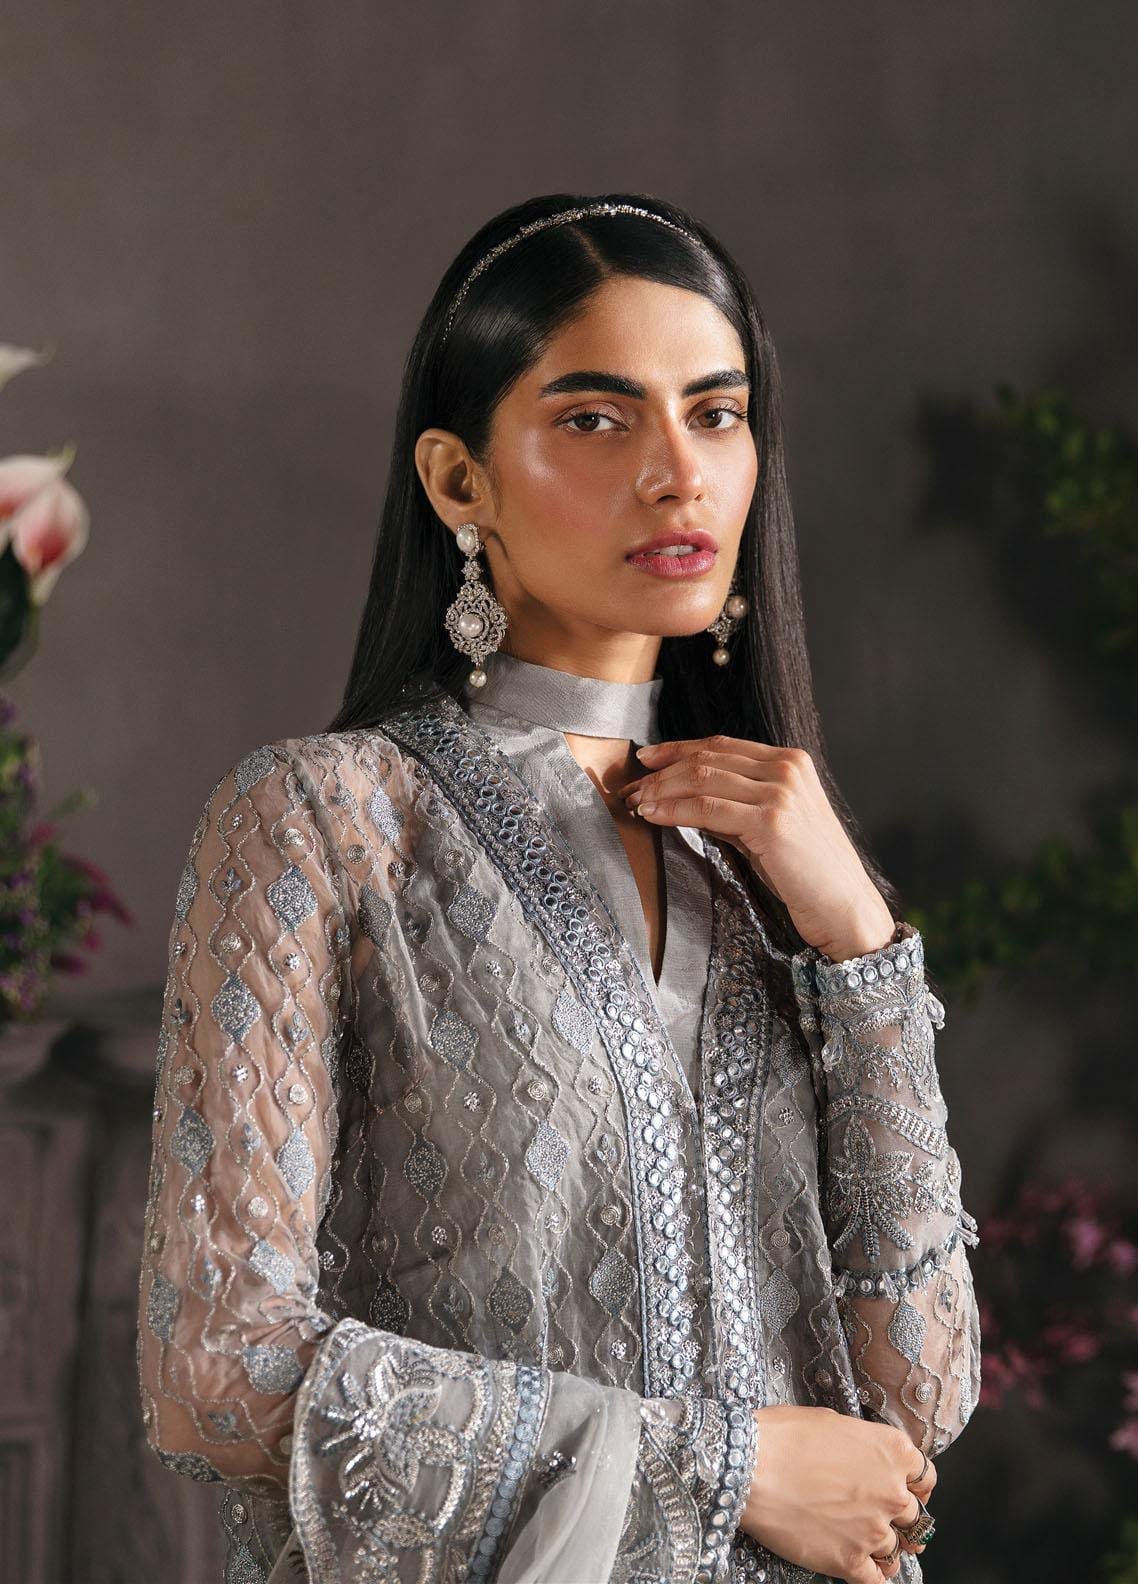 Pakistani Salwar Kameez | Designer Salwar Kameez | Punjabi Suits ...